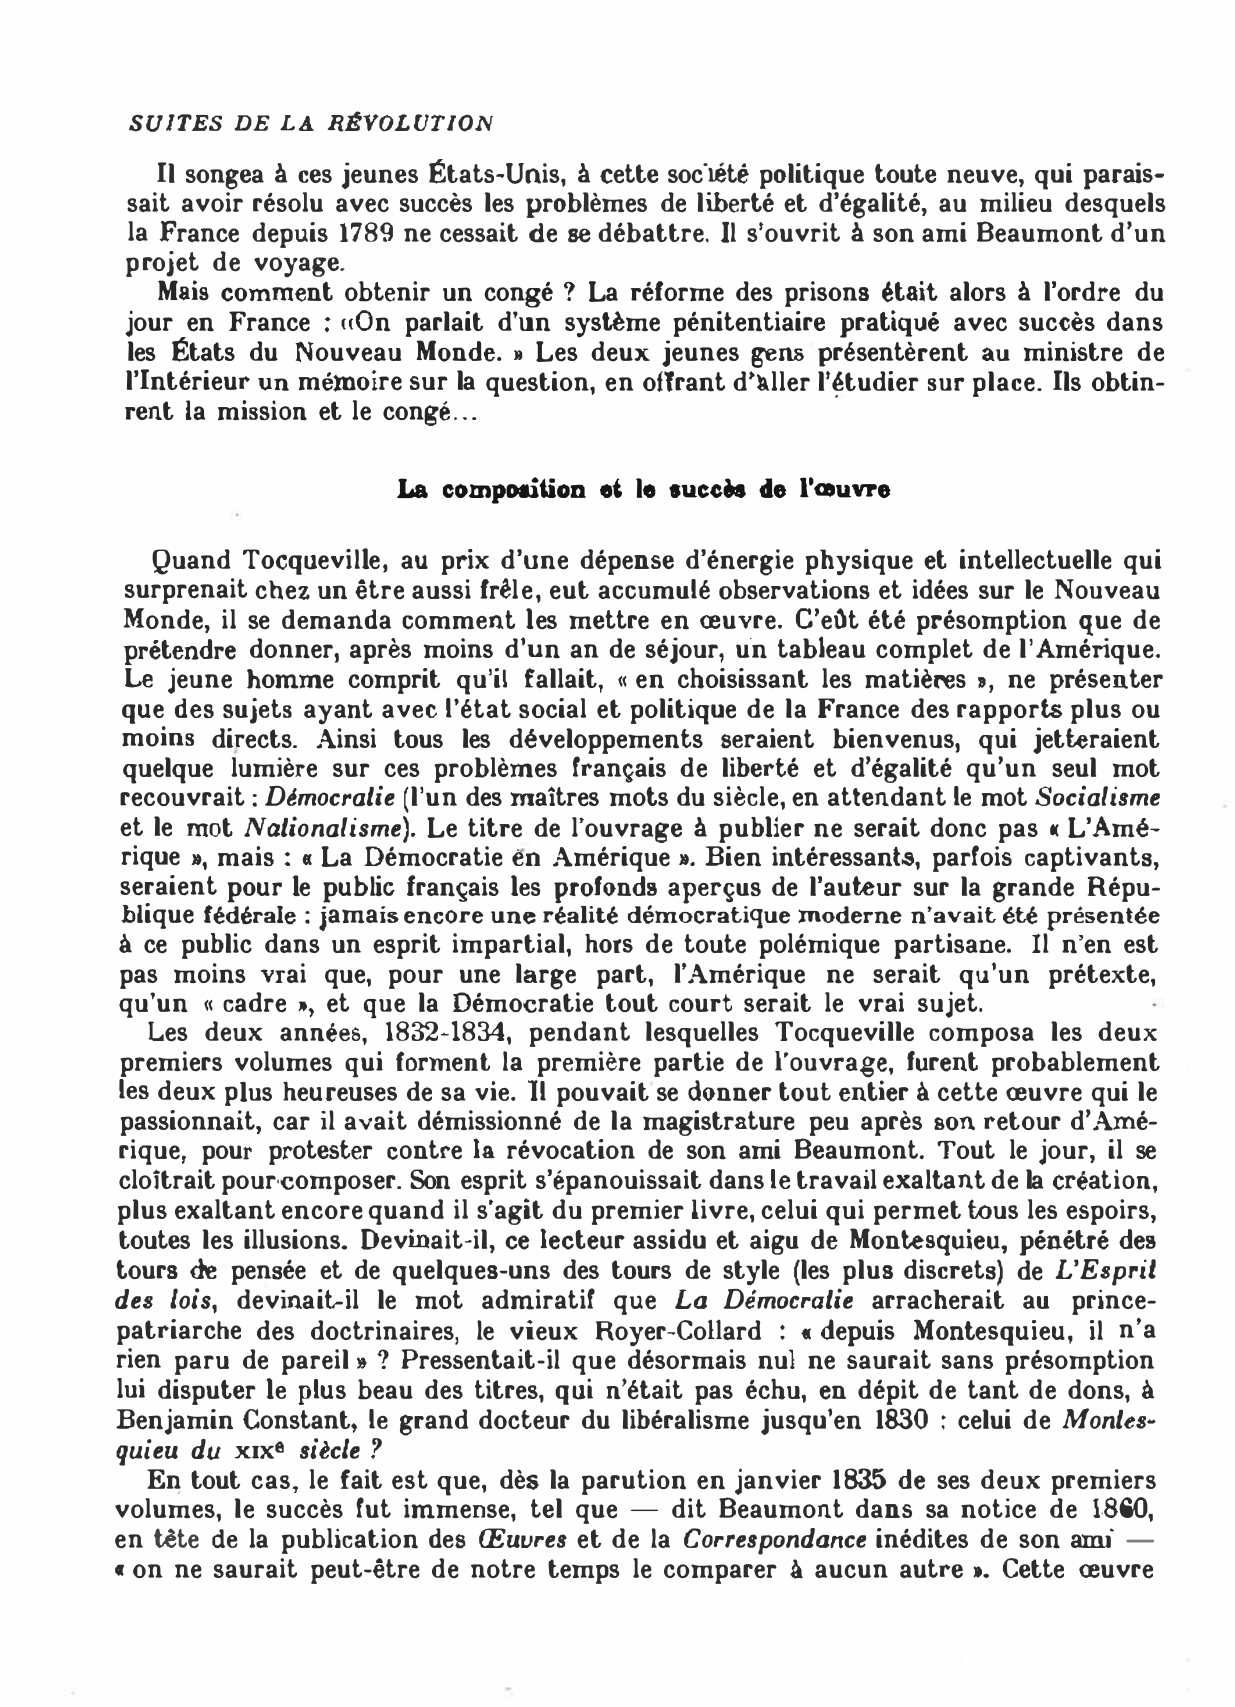 Prévisualisation du document « LA DÉMOCRATIE EN AMÉRIQUE » D'ALEXIS DE TOCQUEVILLE